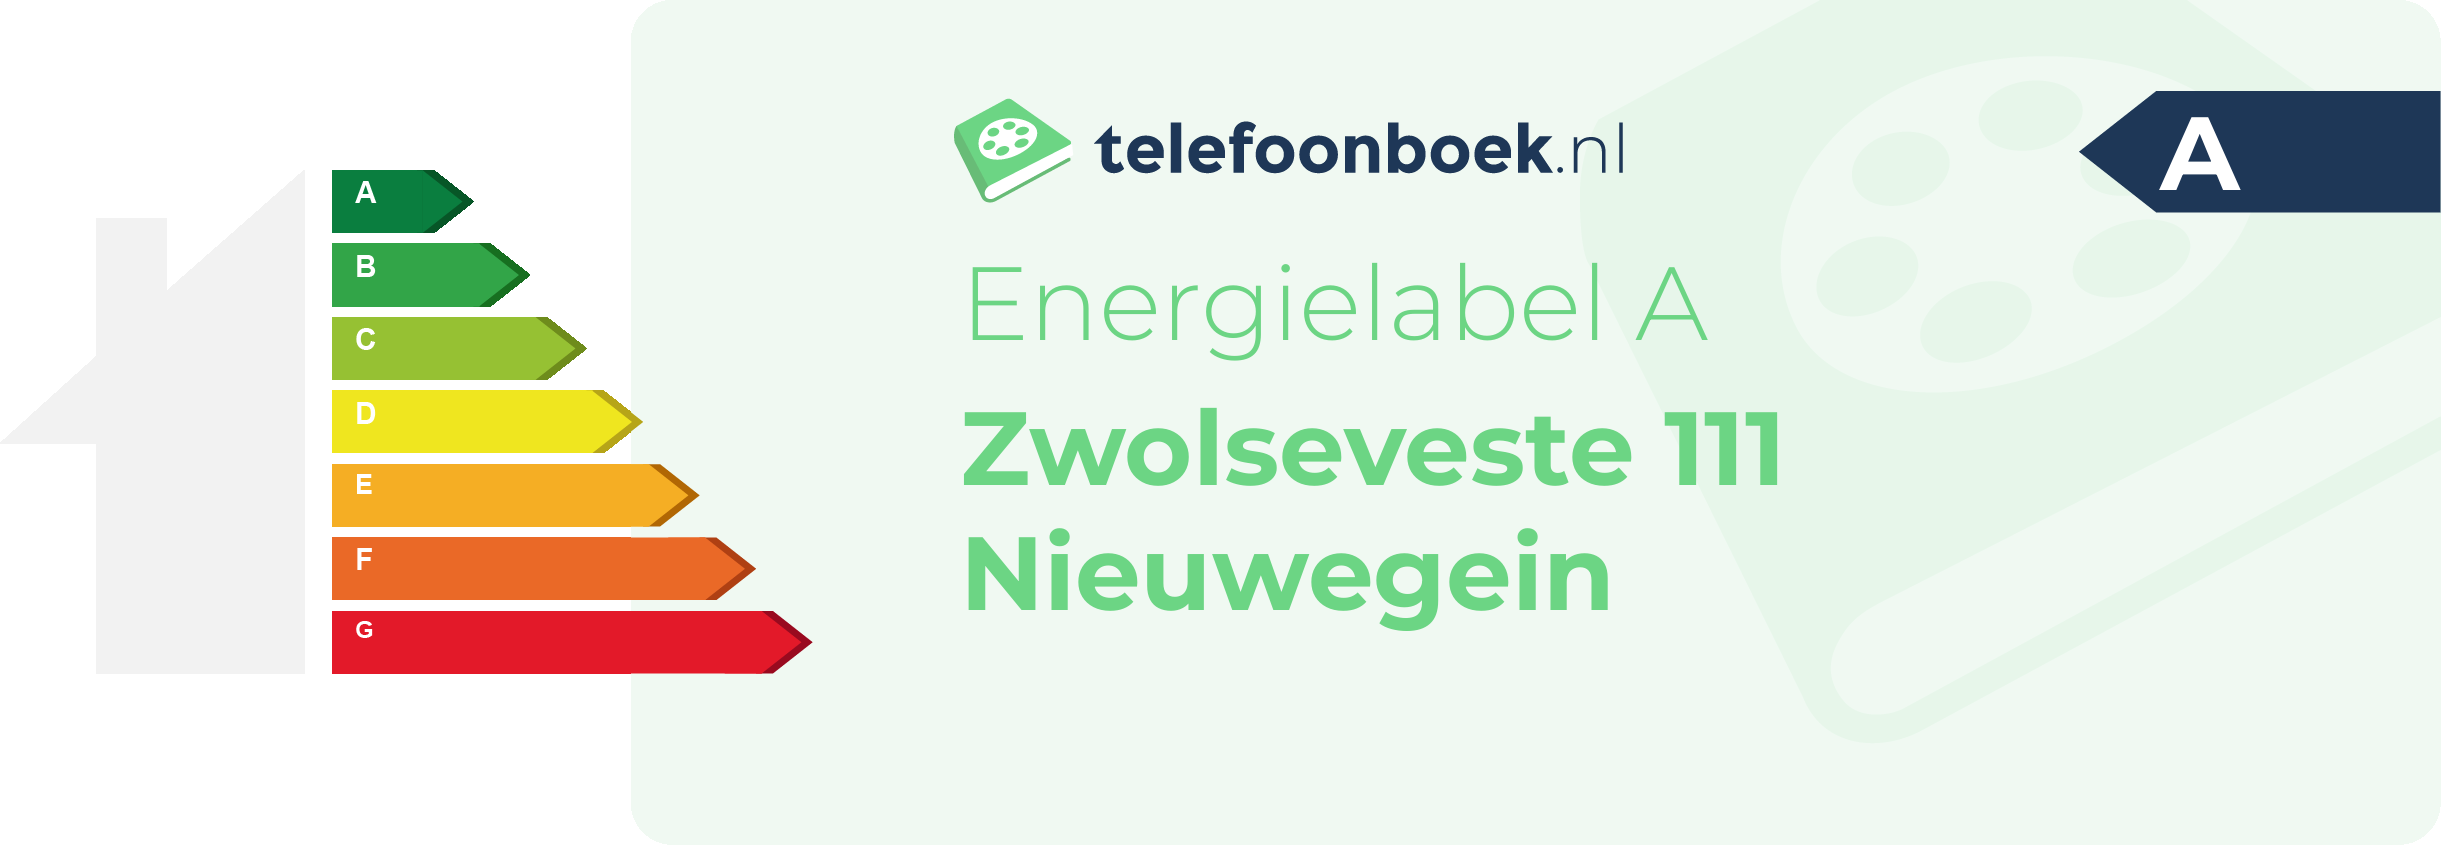 Energielabel Zwolseveste 111 Nieuwegein